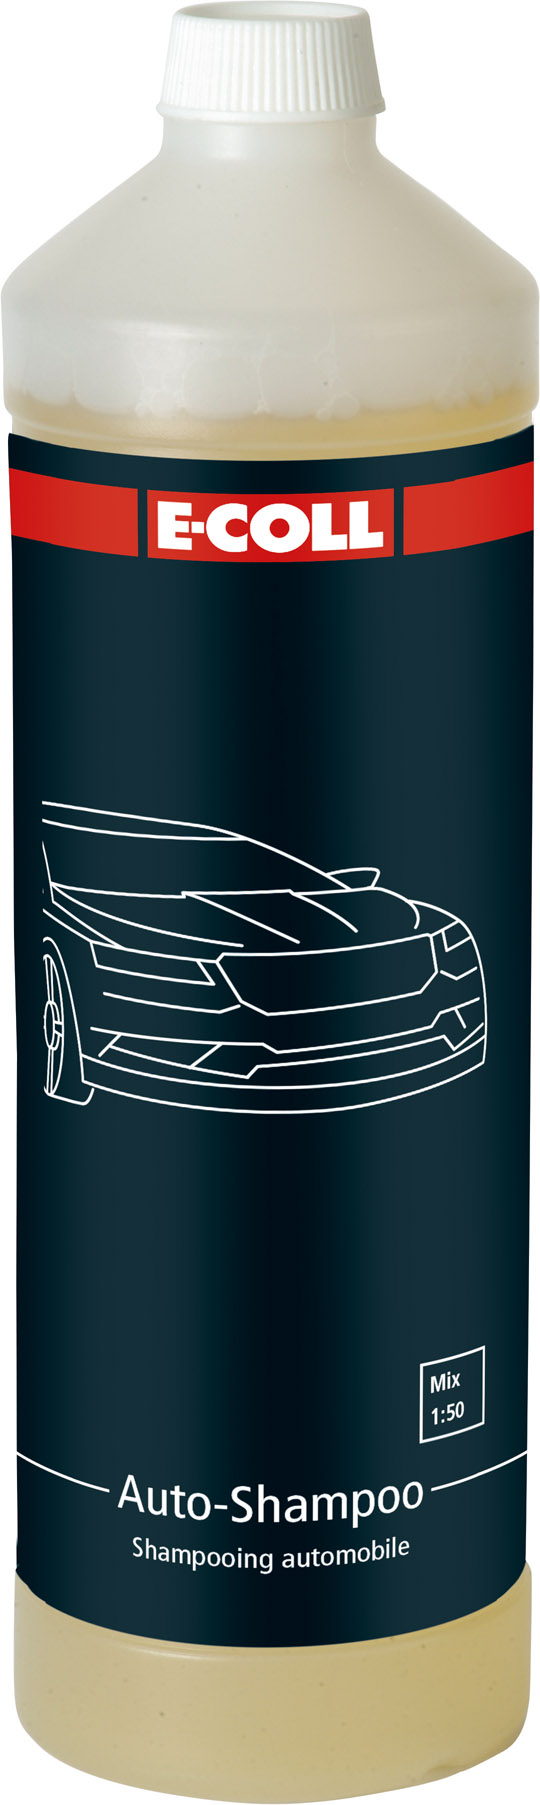 Picture of Auto-Shampoo 1L Flasche E-COLL